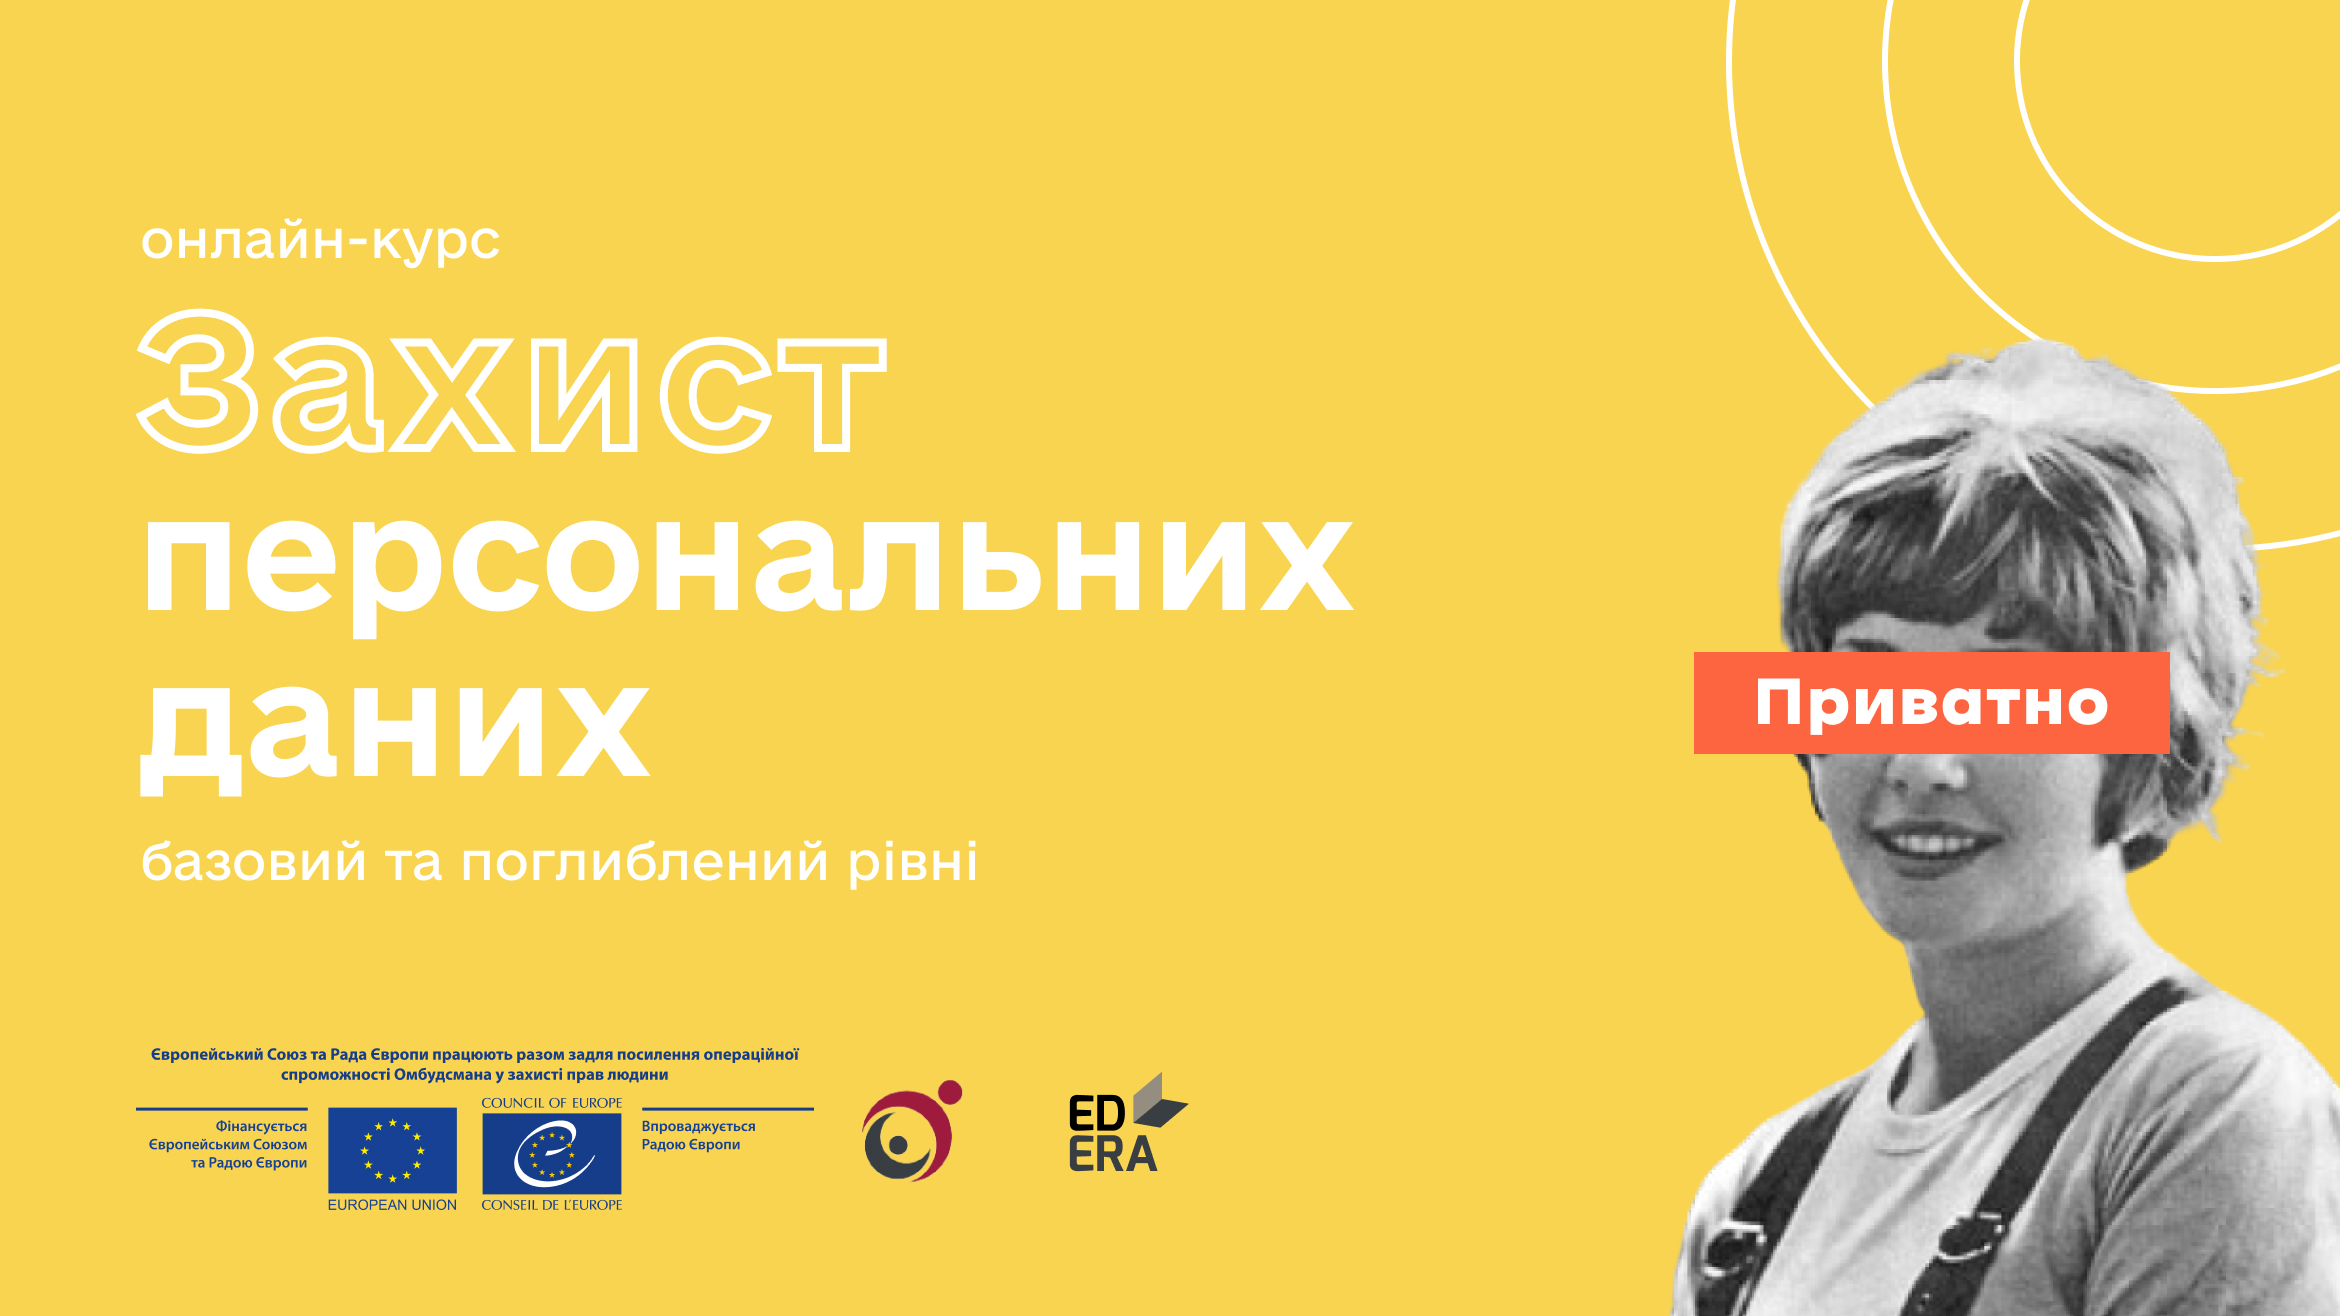 Як захистити персональні дані - Офіс Омбудсмана та Офіс Ради Європи в Україні запускають навчальну ініціативу